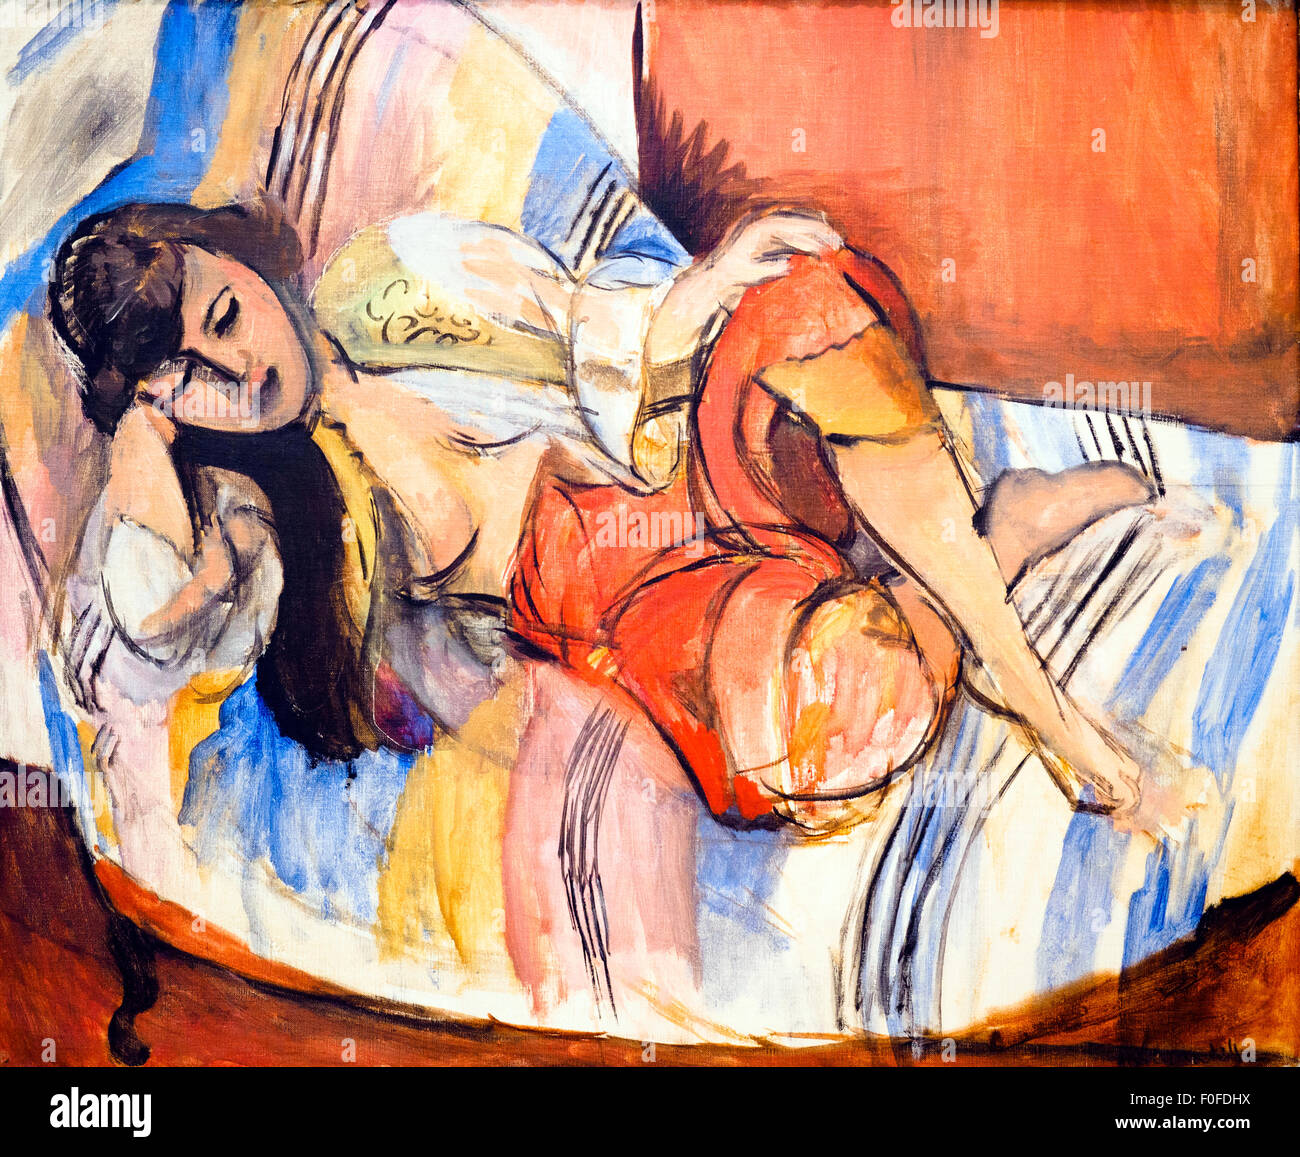 Henri Matisse (Le Cateau-cambresis (FR), 1869 - Nice (FR) 1954) Odalisque, 1920-1921 huile sur toile Banque D'Images